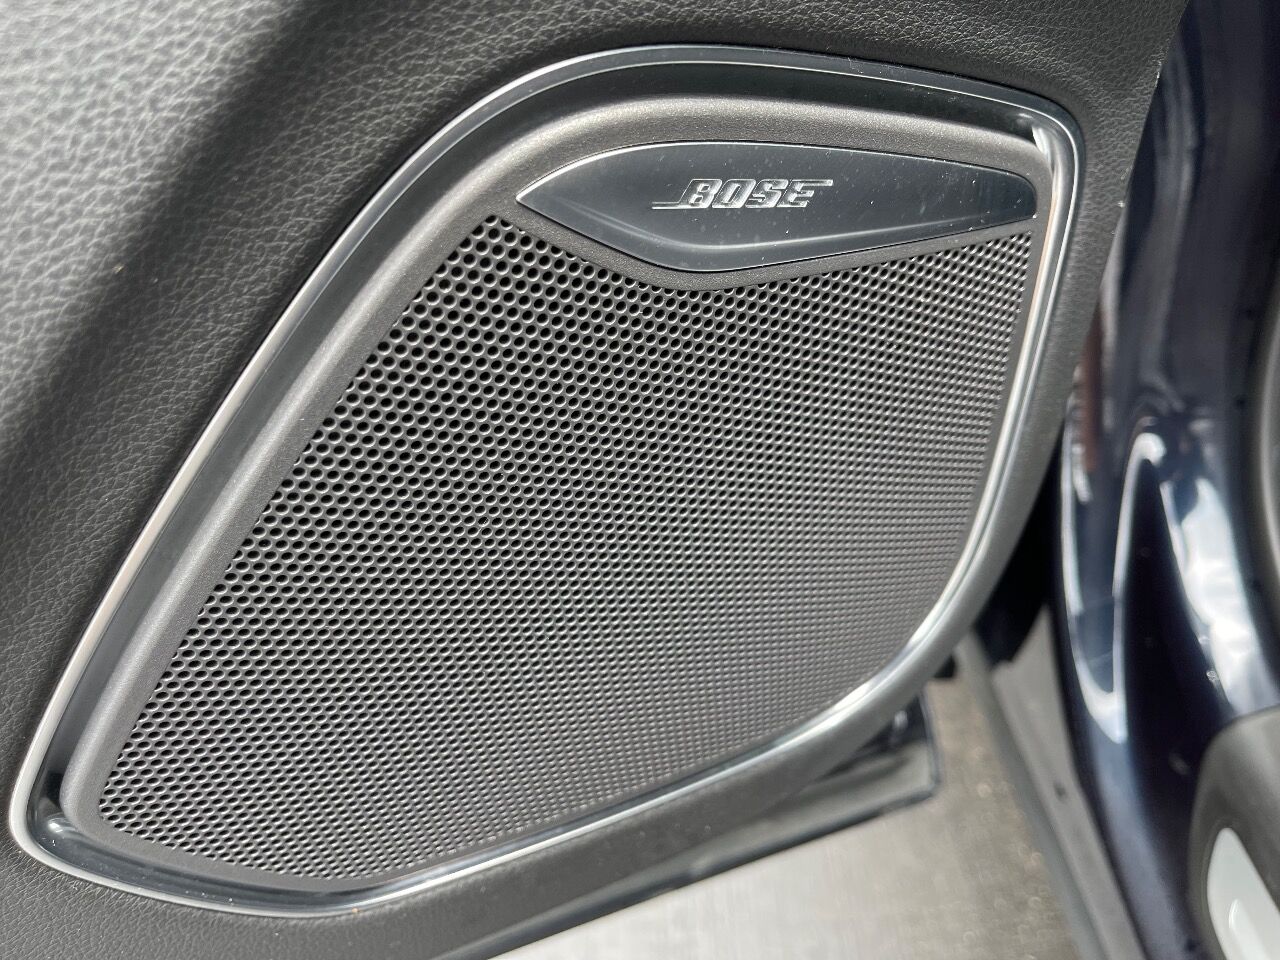 2015 Audi Q3 SUV - $14,900